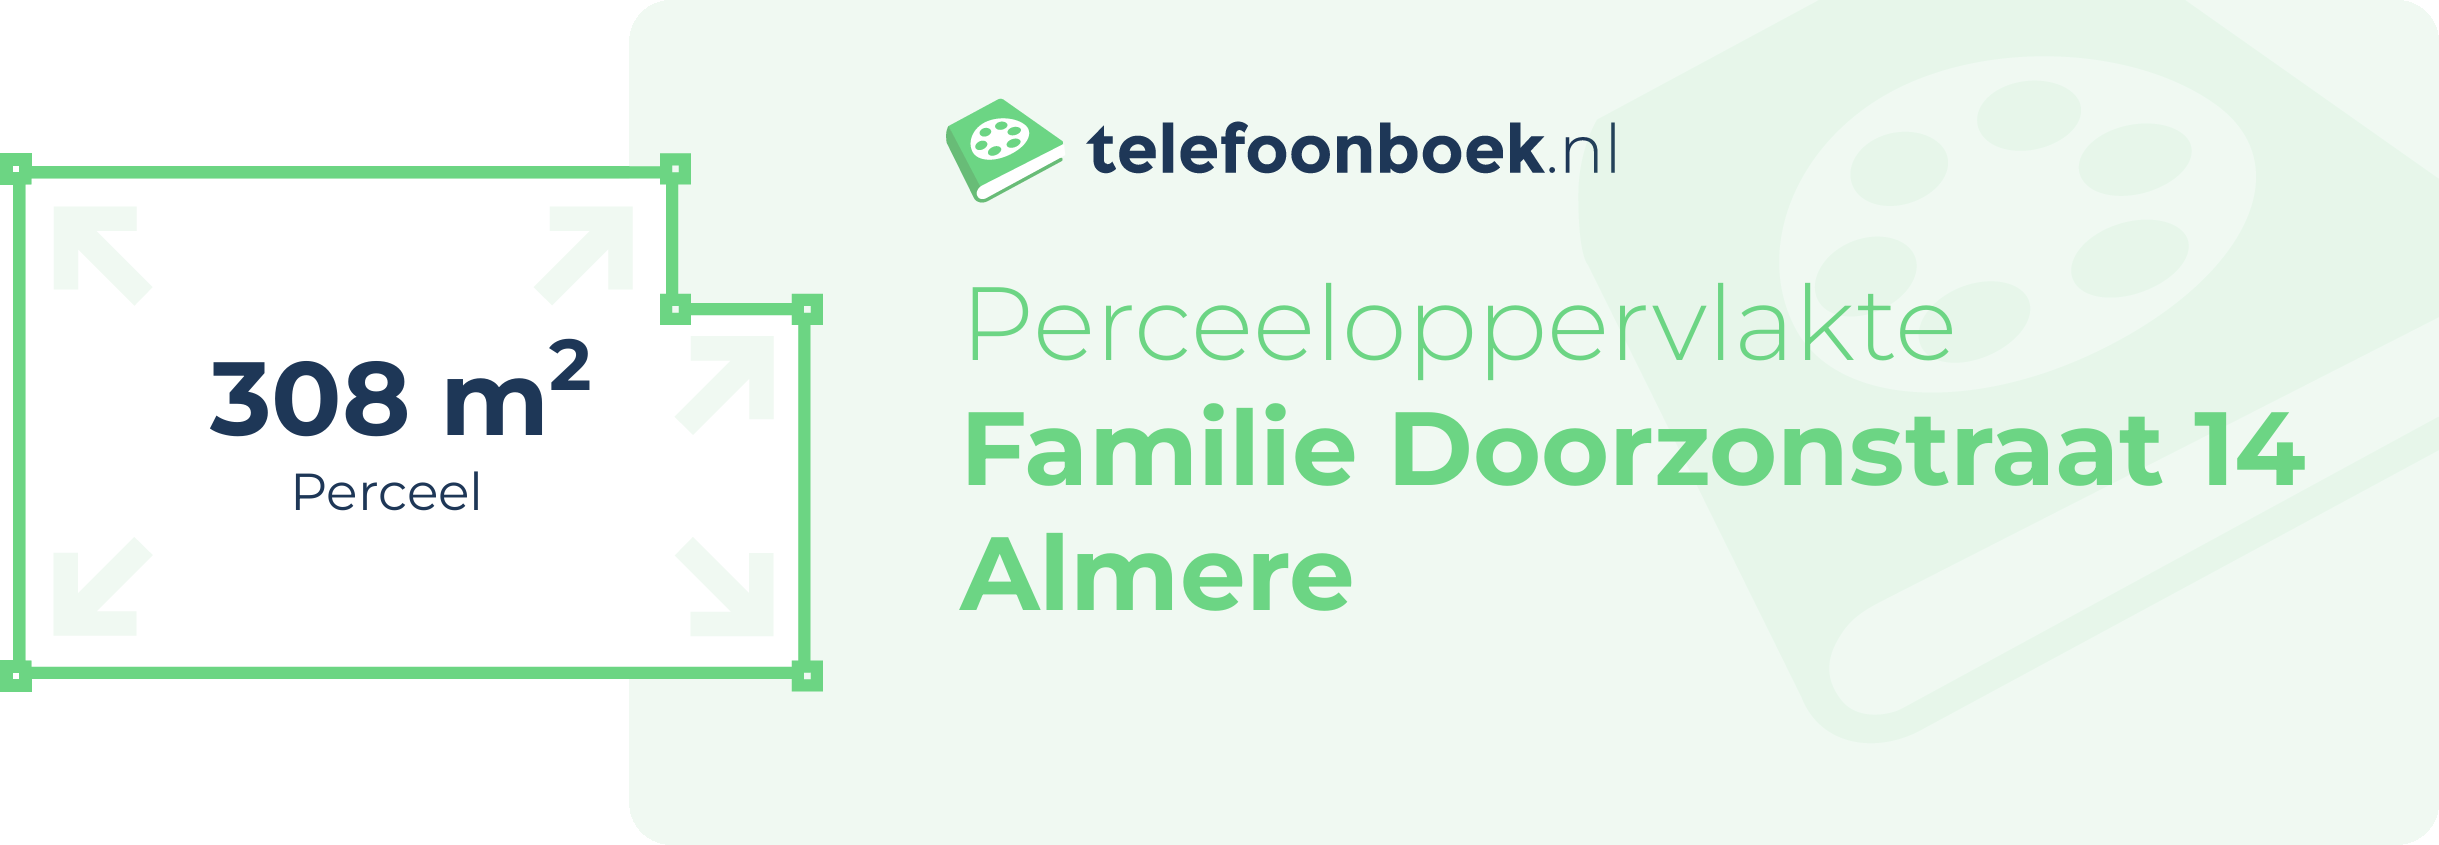 Perceeloppervlakte Familie Doorzonstraat 14 Almere